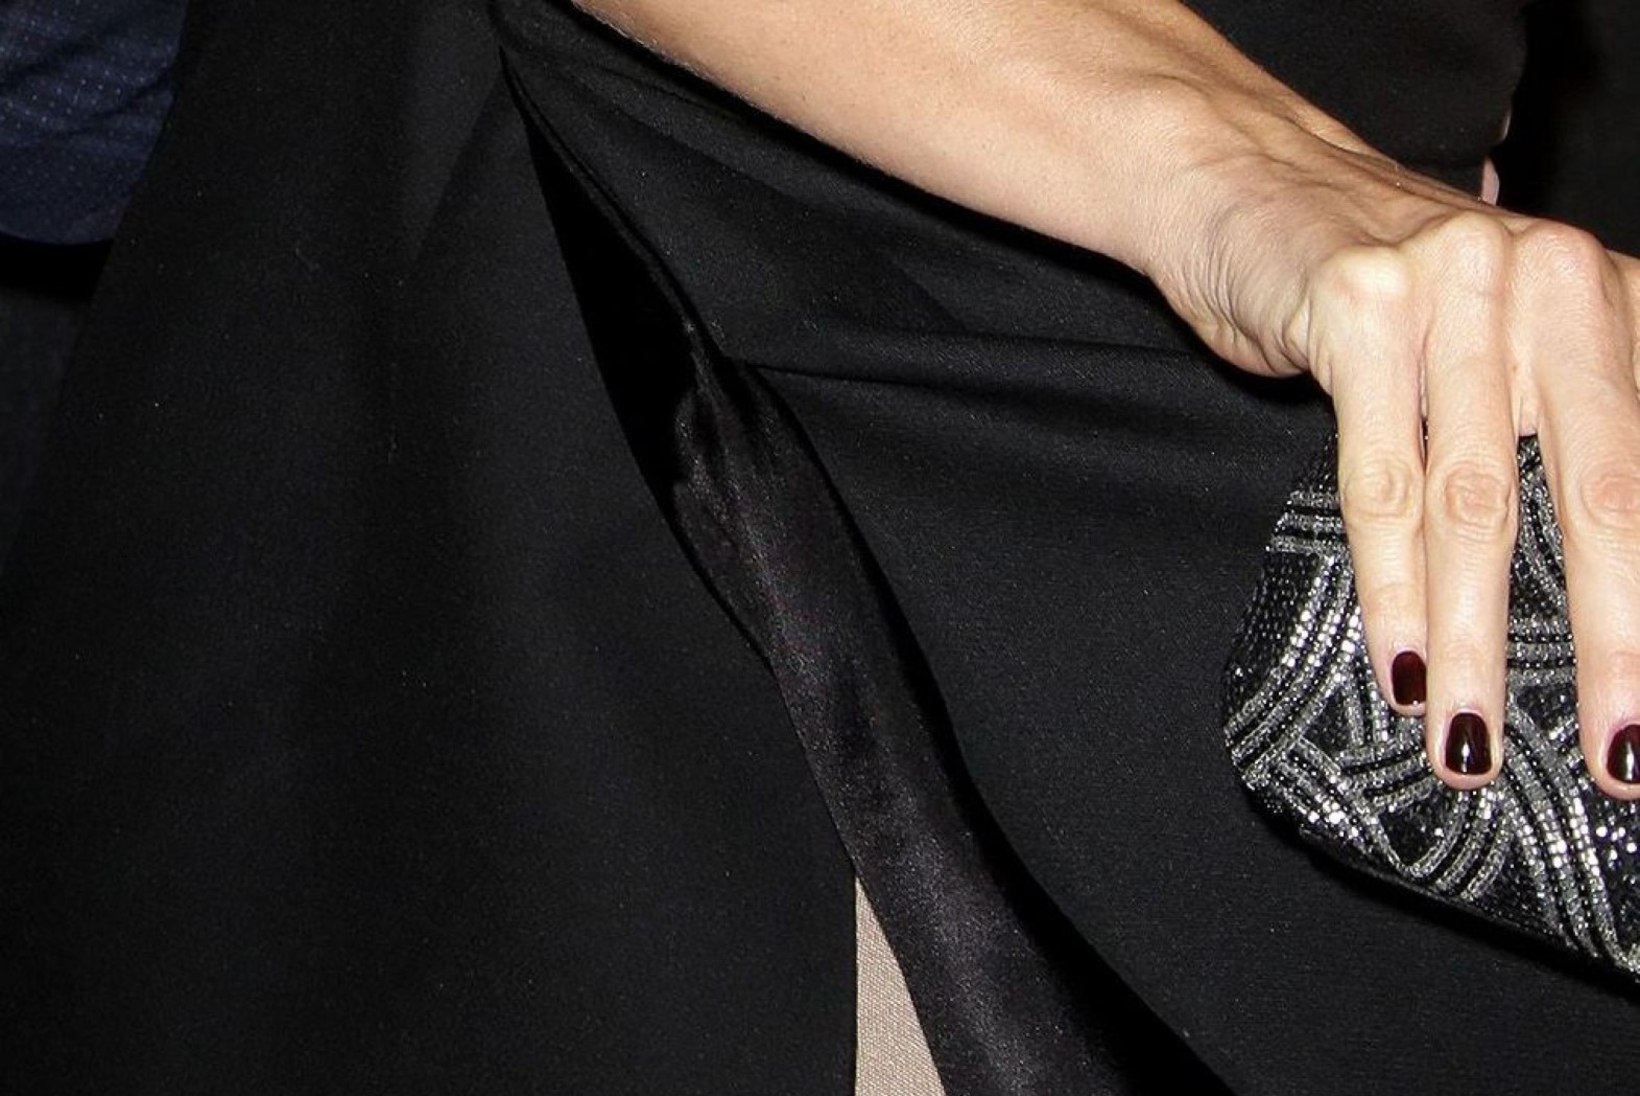 UPS! Jennifer Garneri trimmiv aluspesu tuli punasel vaibal nähtavale